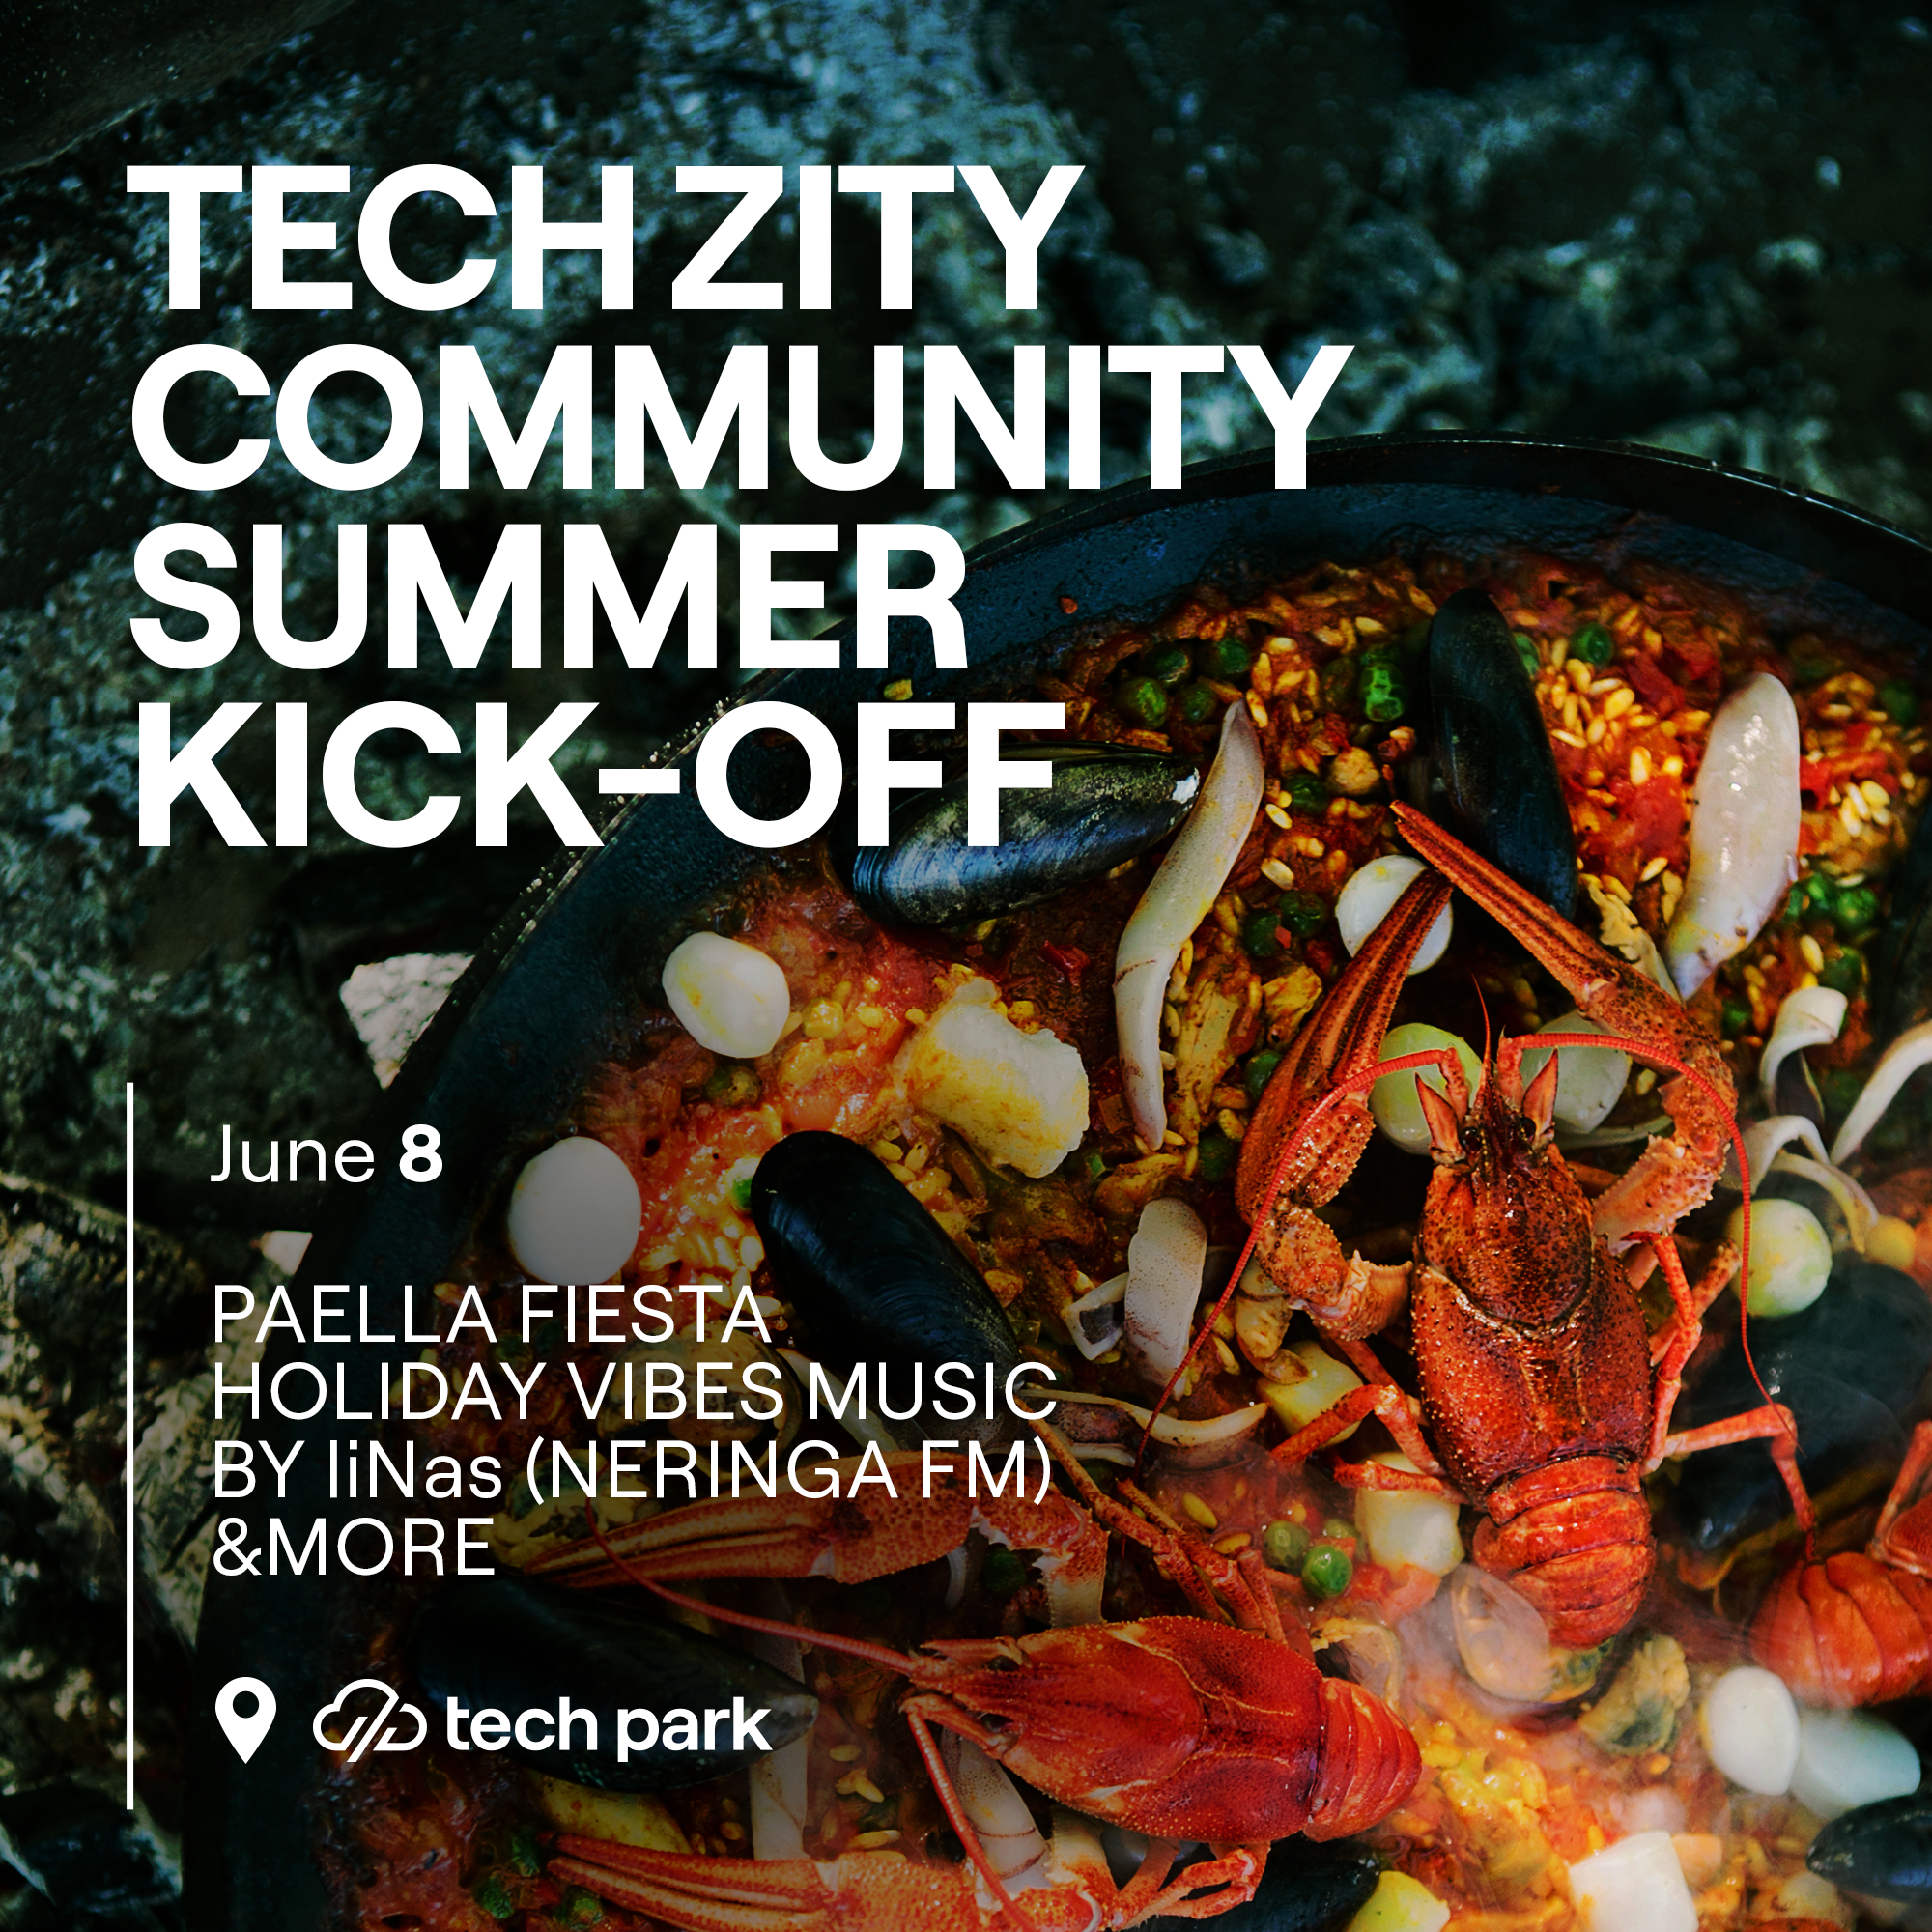 TechZity - Tech Zity Community Summer Kick-Off